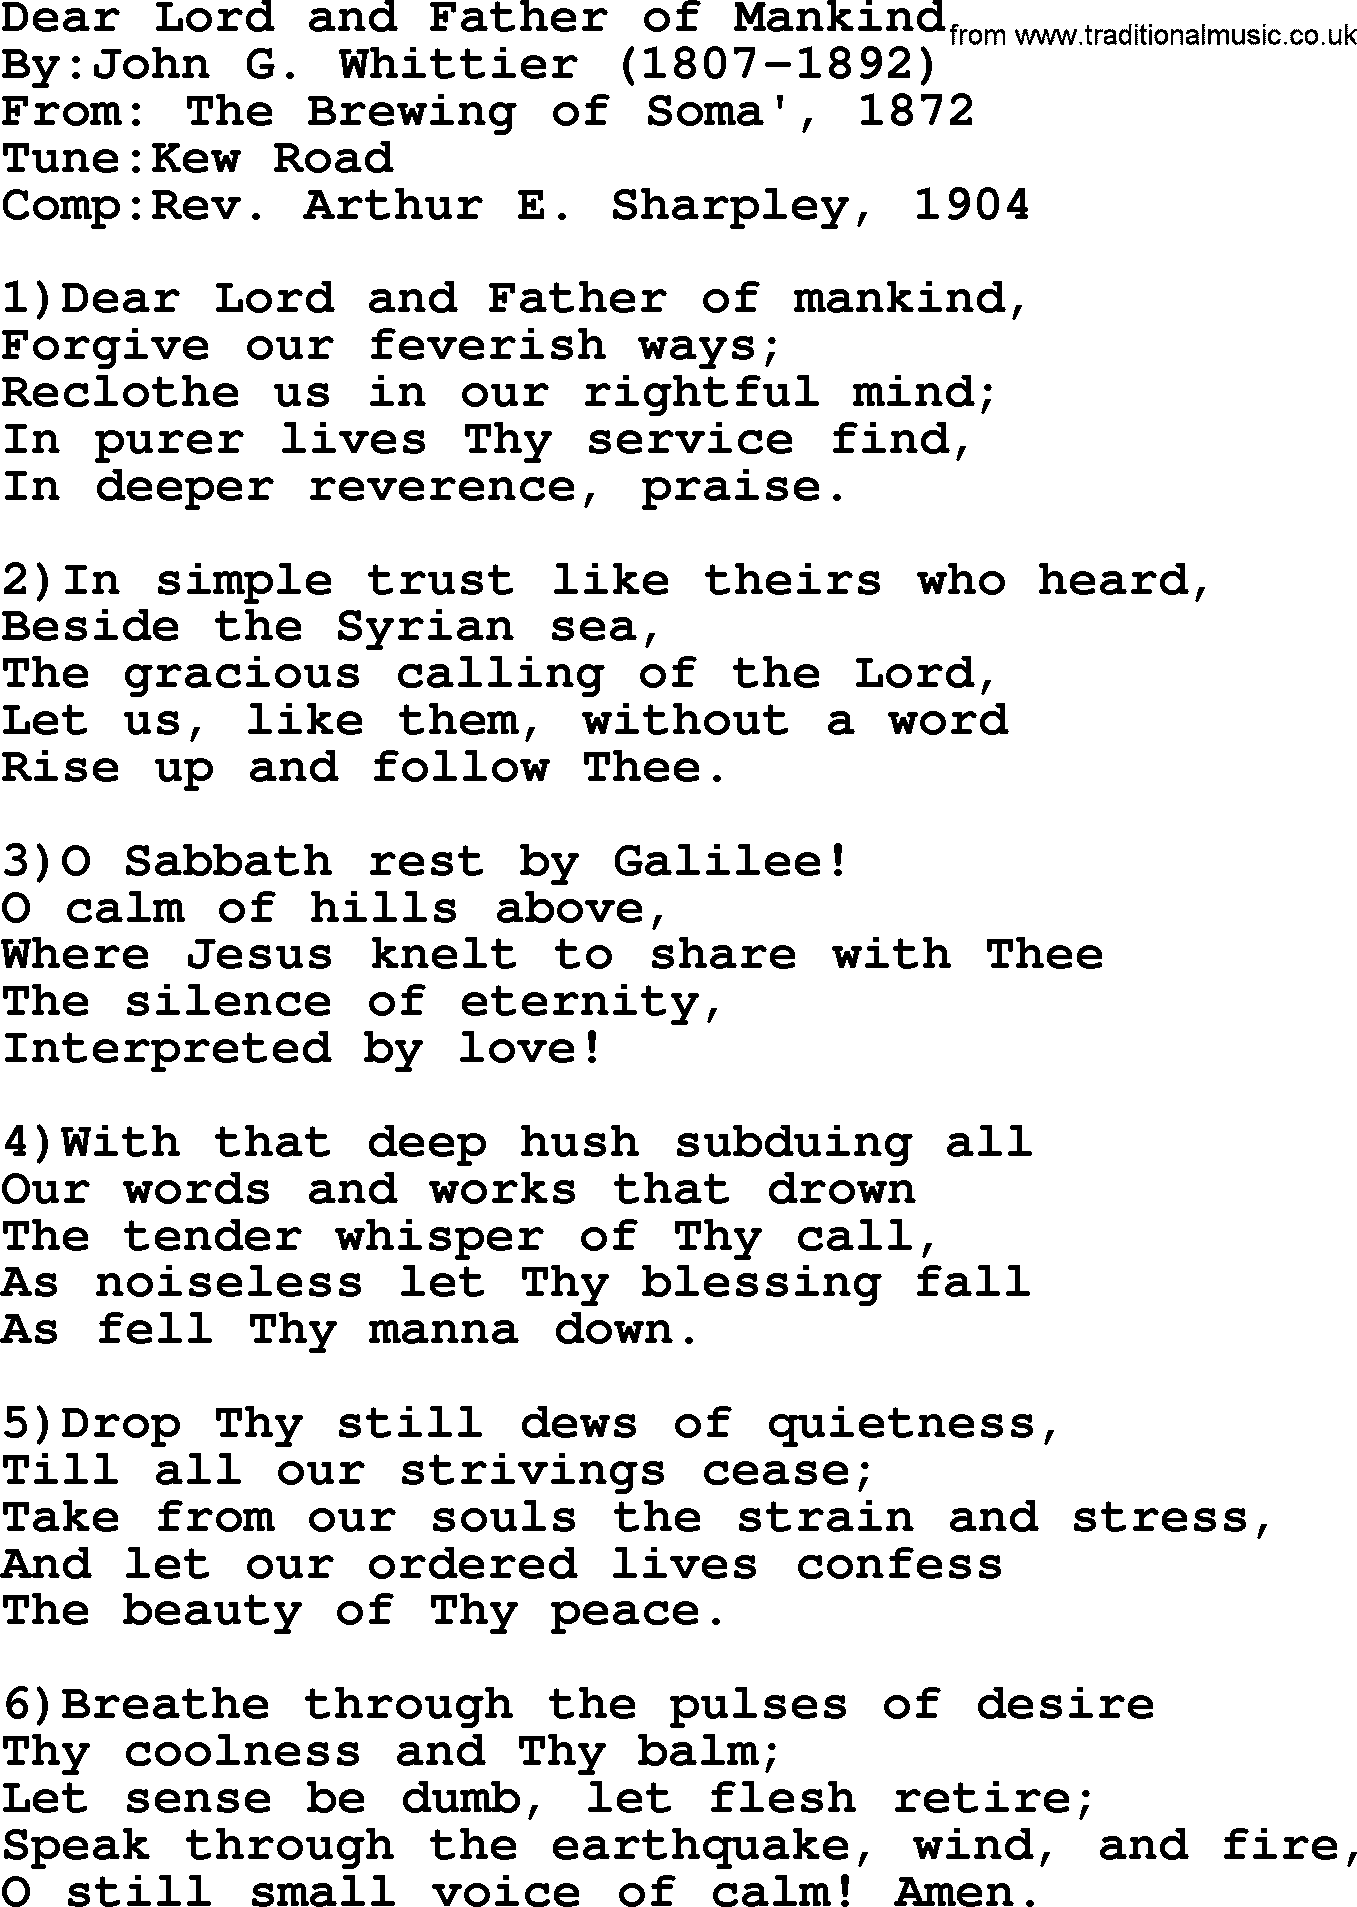 Methodist Hymn: Dear Lord And Father Of Mankind, lyrics